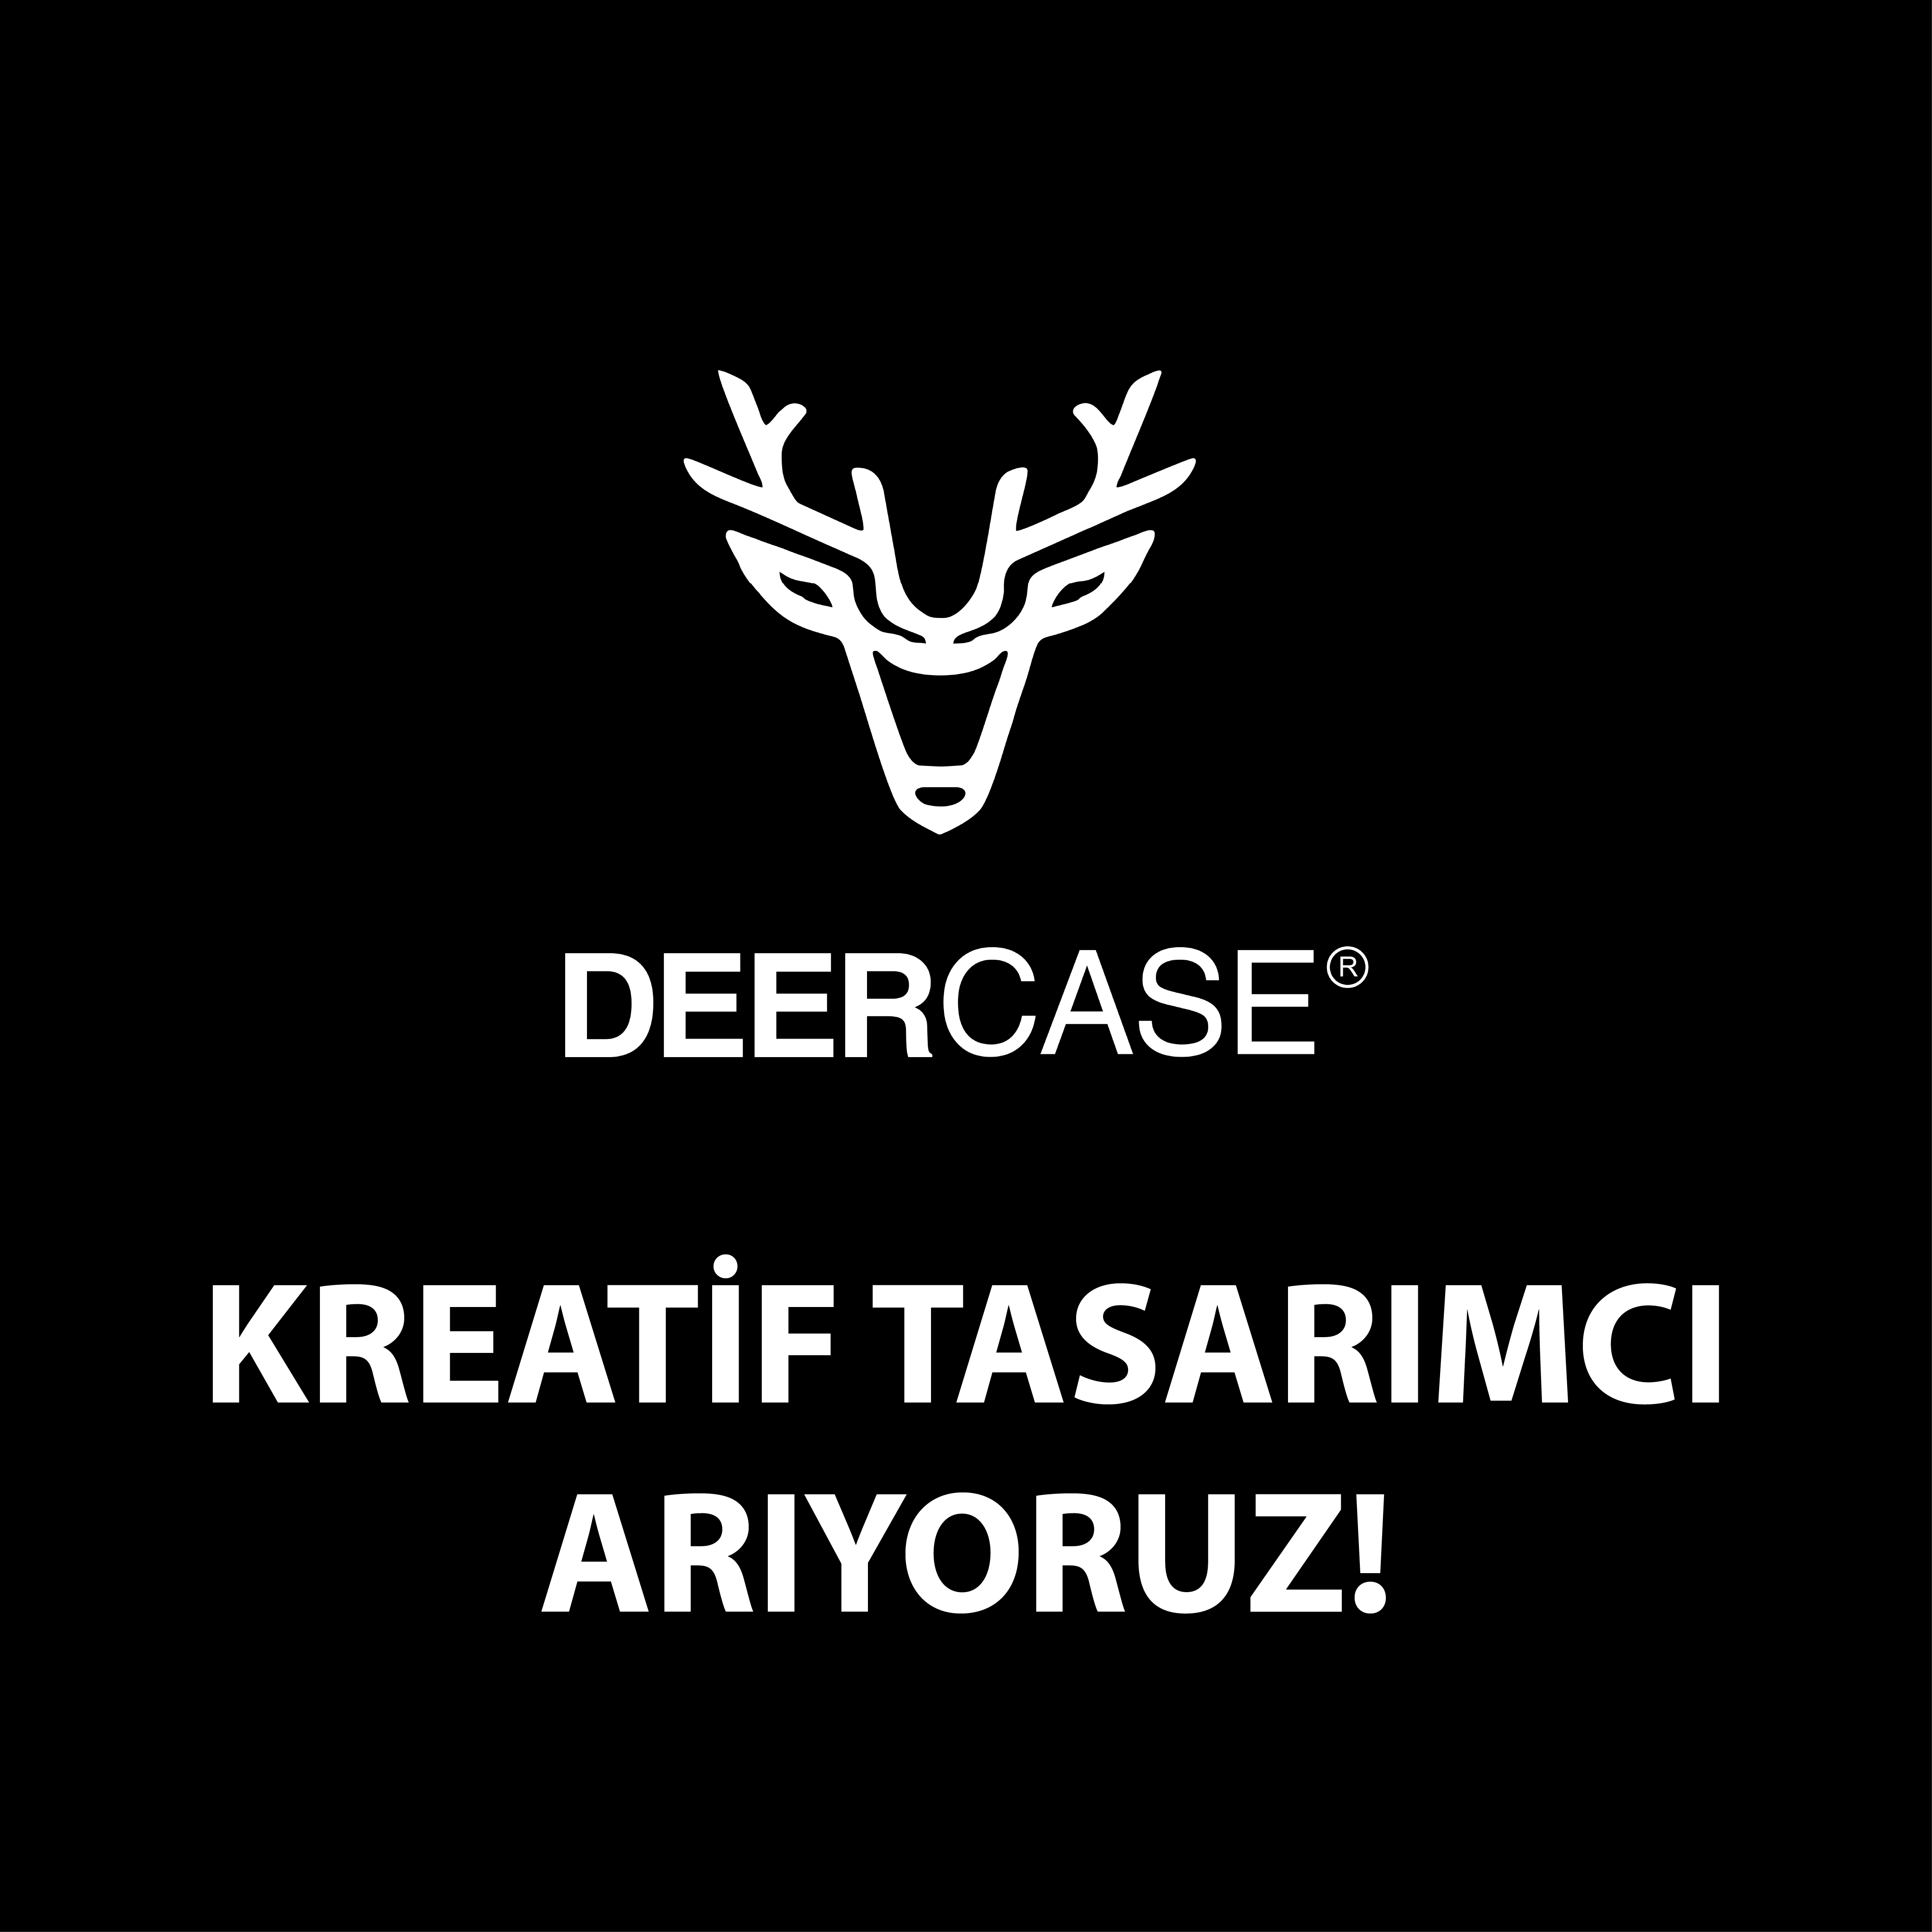 Deercase Kreatif Tasarımcı Arıyor!